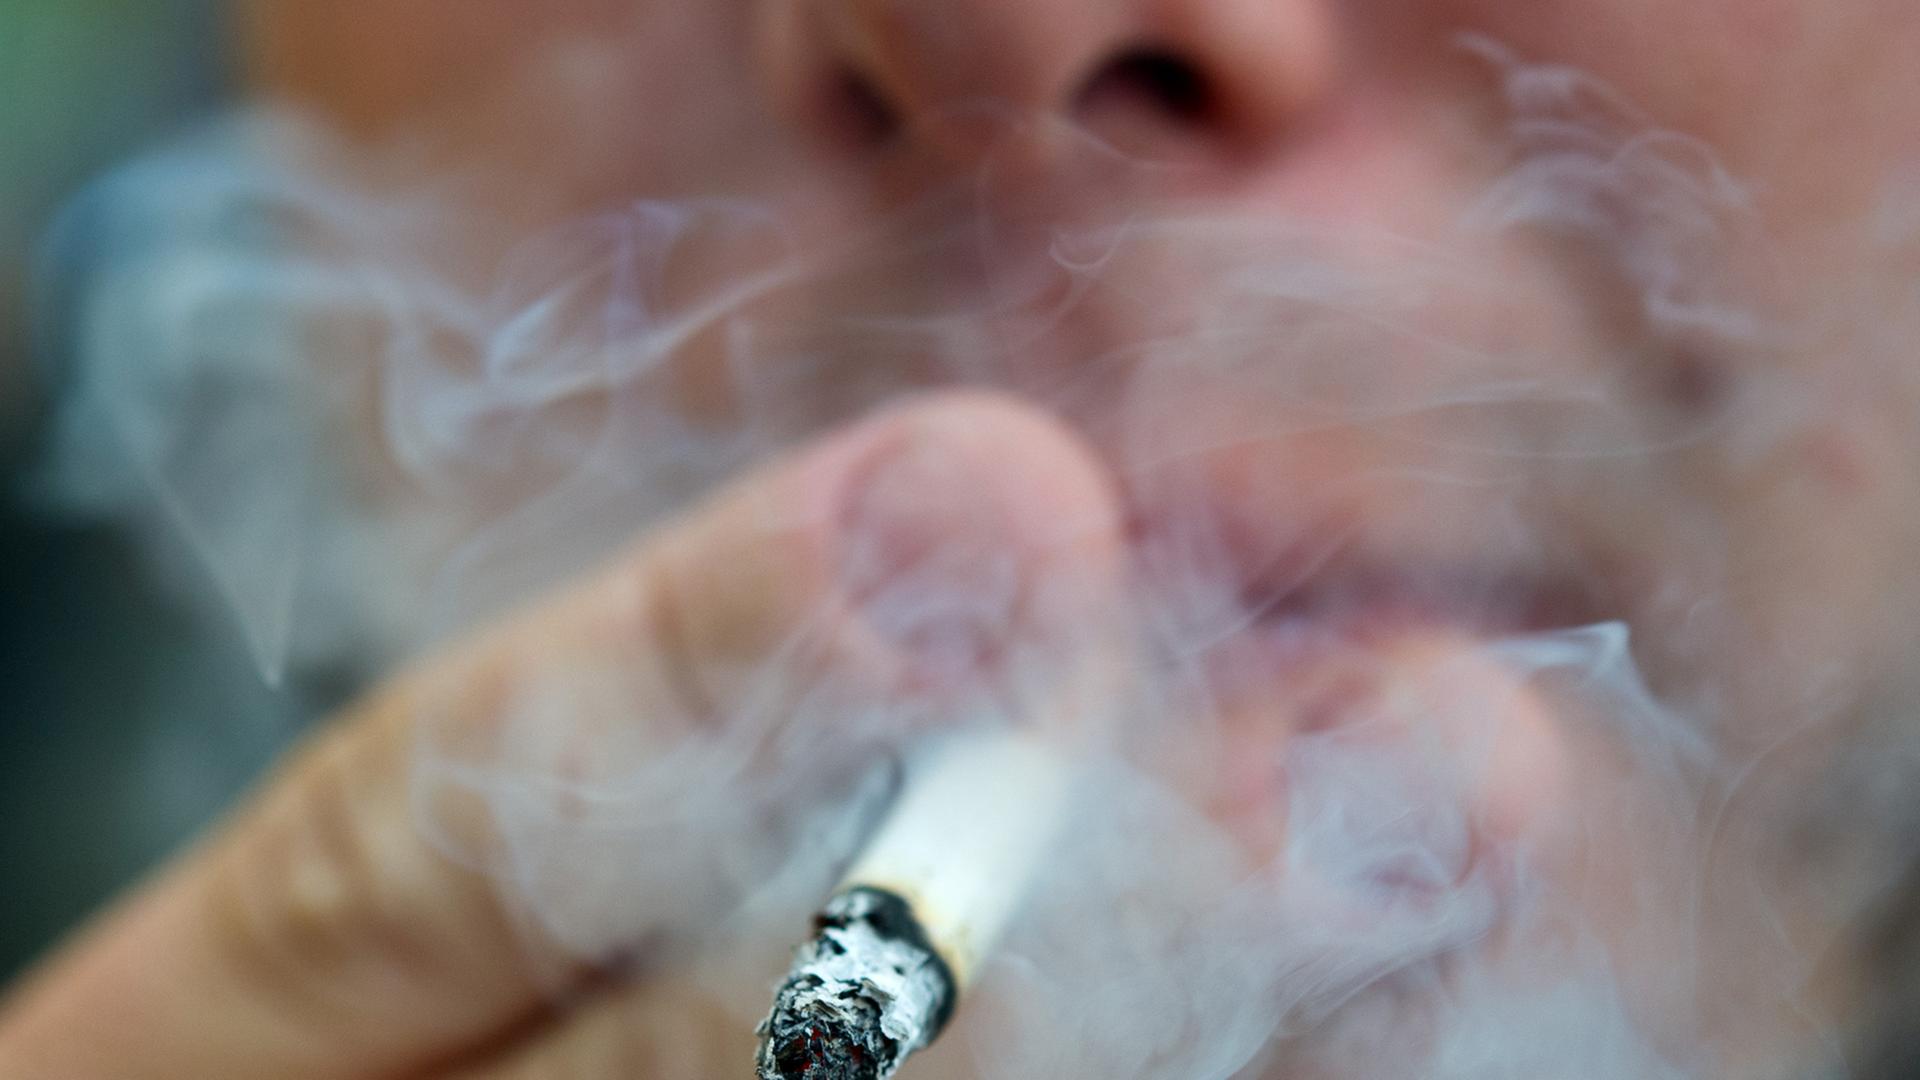 Tabak-Konsum - Drogenbeauftragter für härteren Kurs gegen das Rauchen